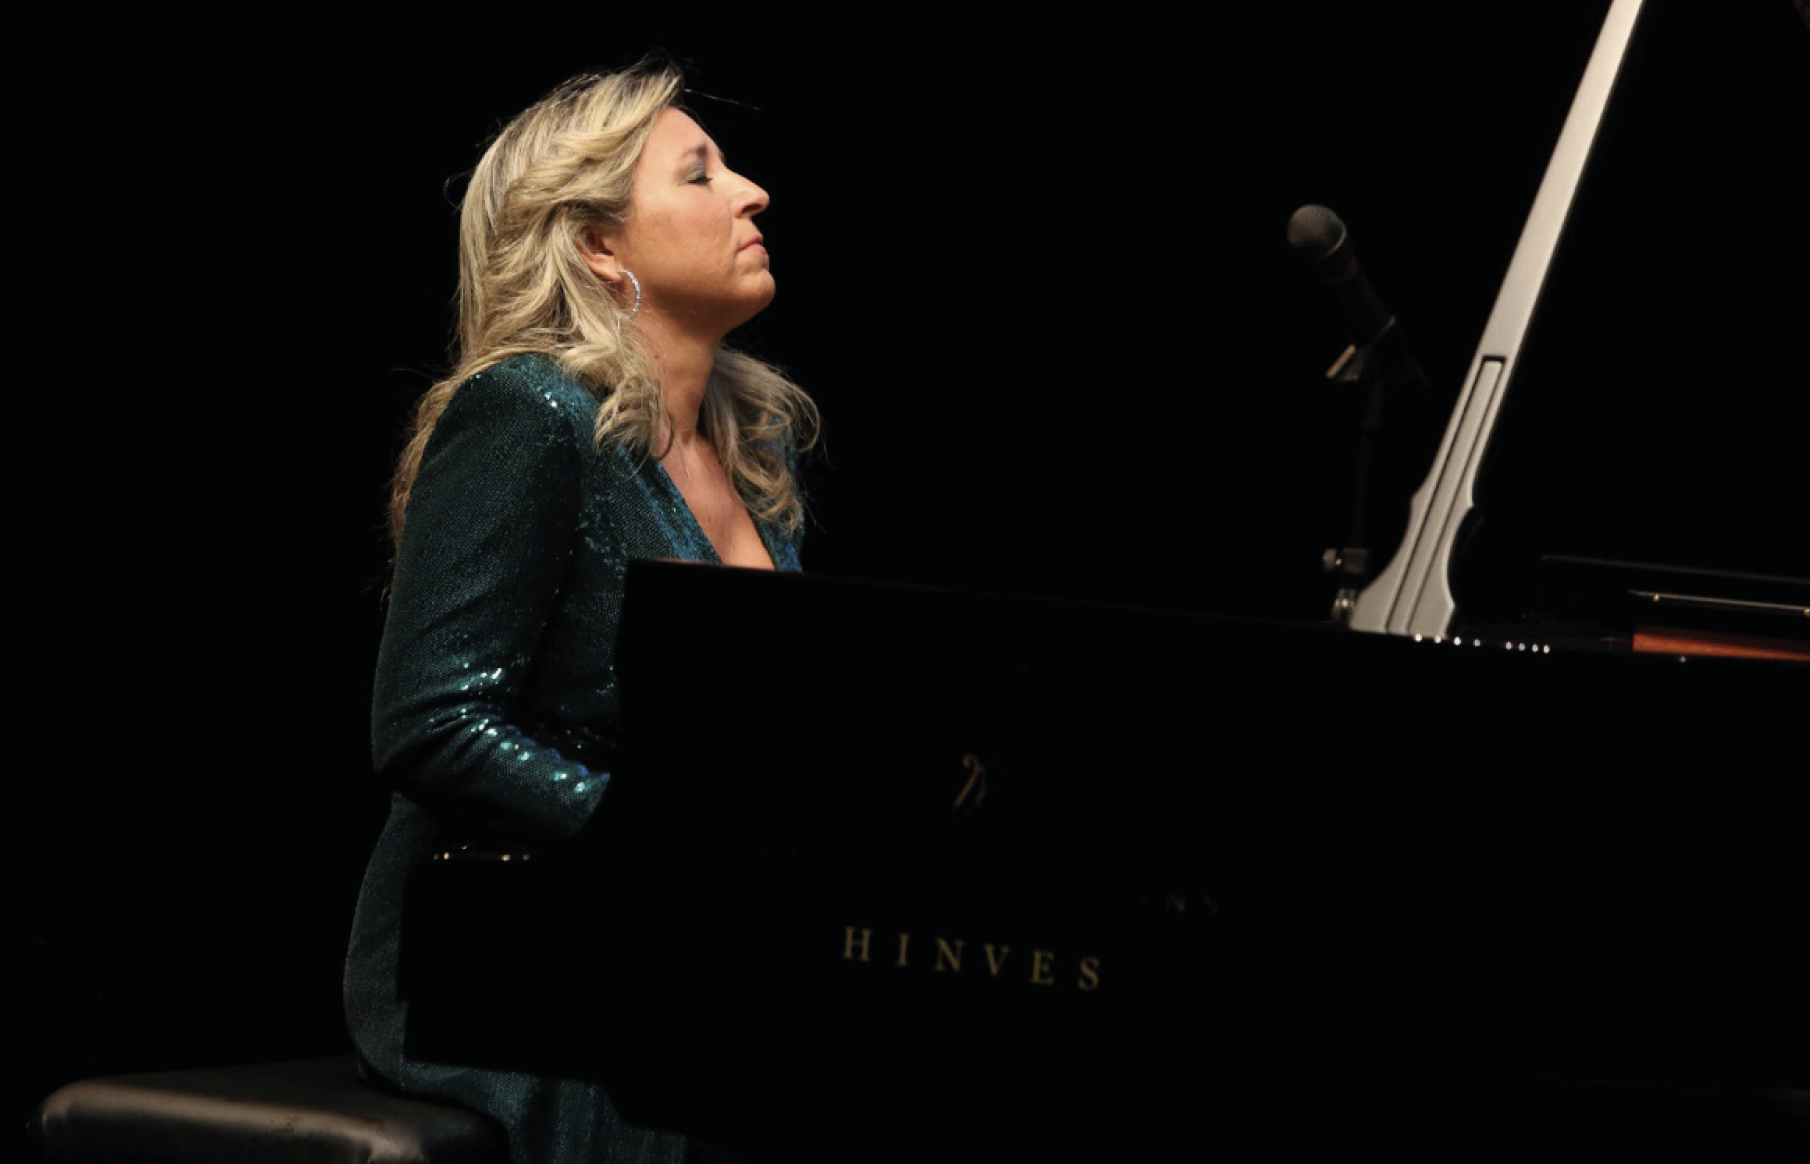 Momentos de gran concentración e inspiración durante la interpretación de Paula Coronas en el recital dedicado al piano hispanoamericano.
(Foto: Tamara Harillo).